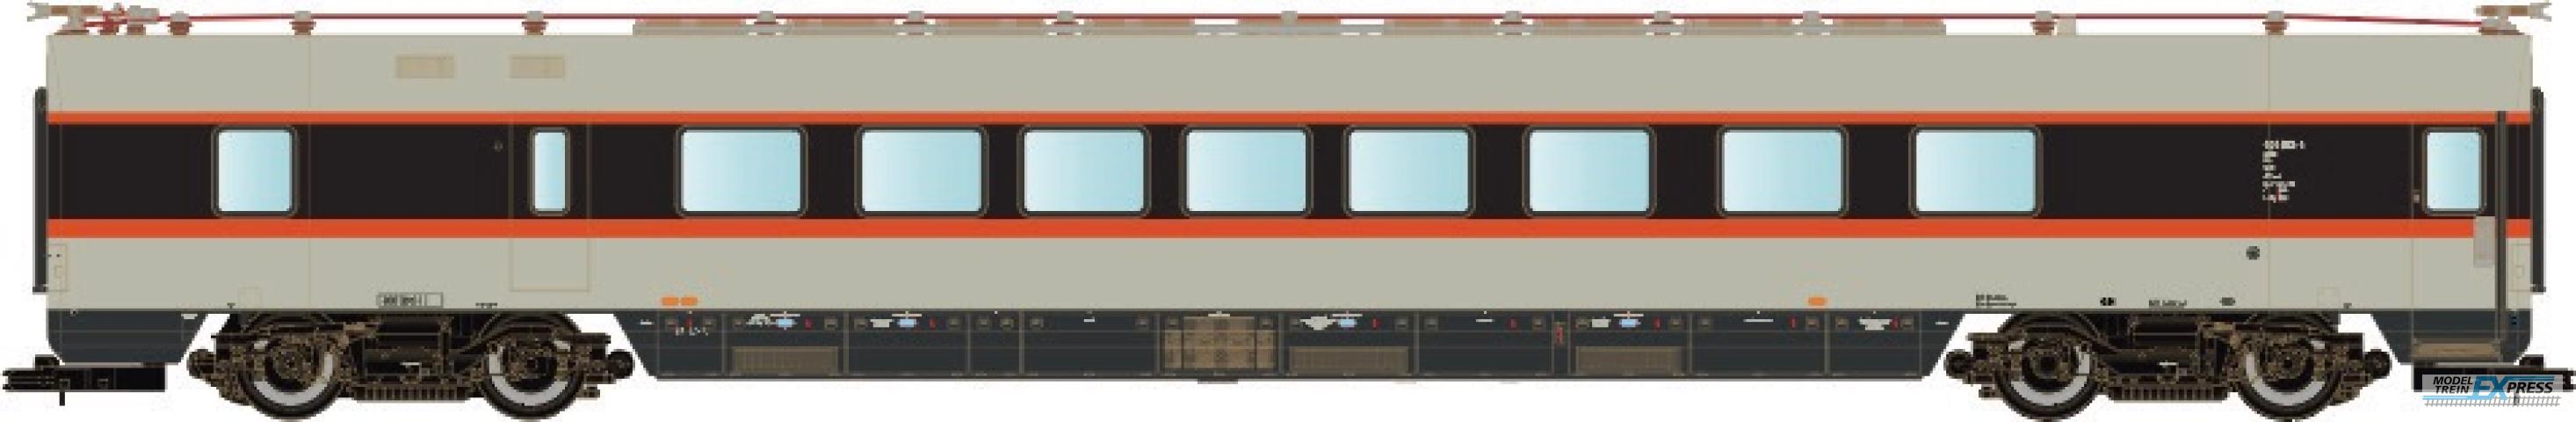 LS Models 16503 DB ET 403, restauratie-rijtuig, grijs/rood/zwart, IC, versterkingswagen  /  Ep. IVa  /  DB  /  HO  /  AC  /  1 P.